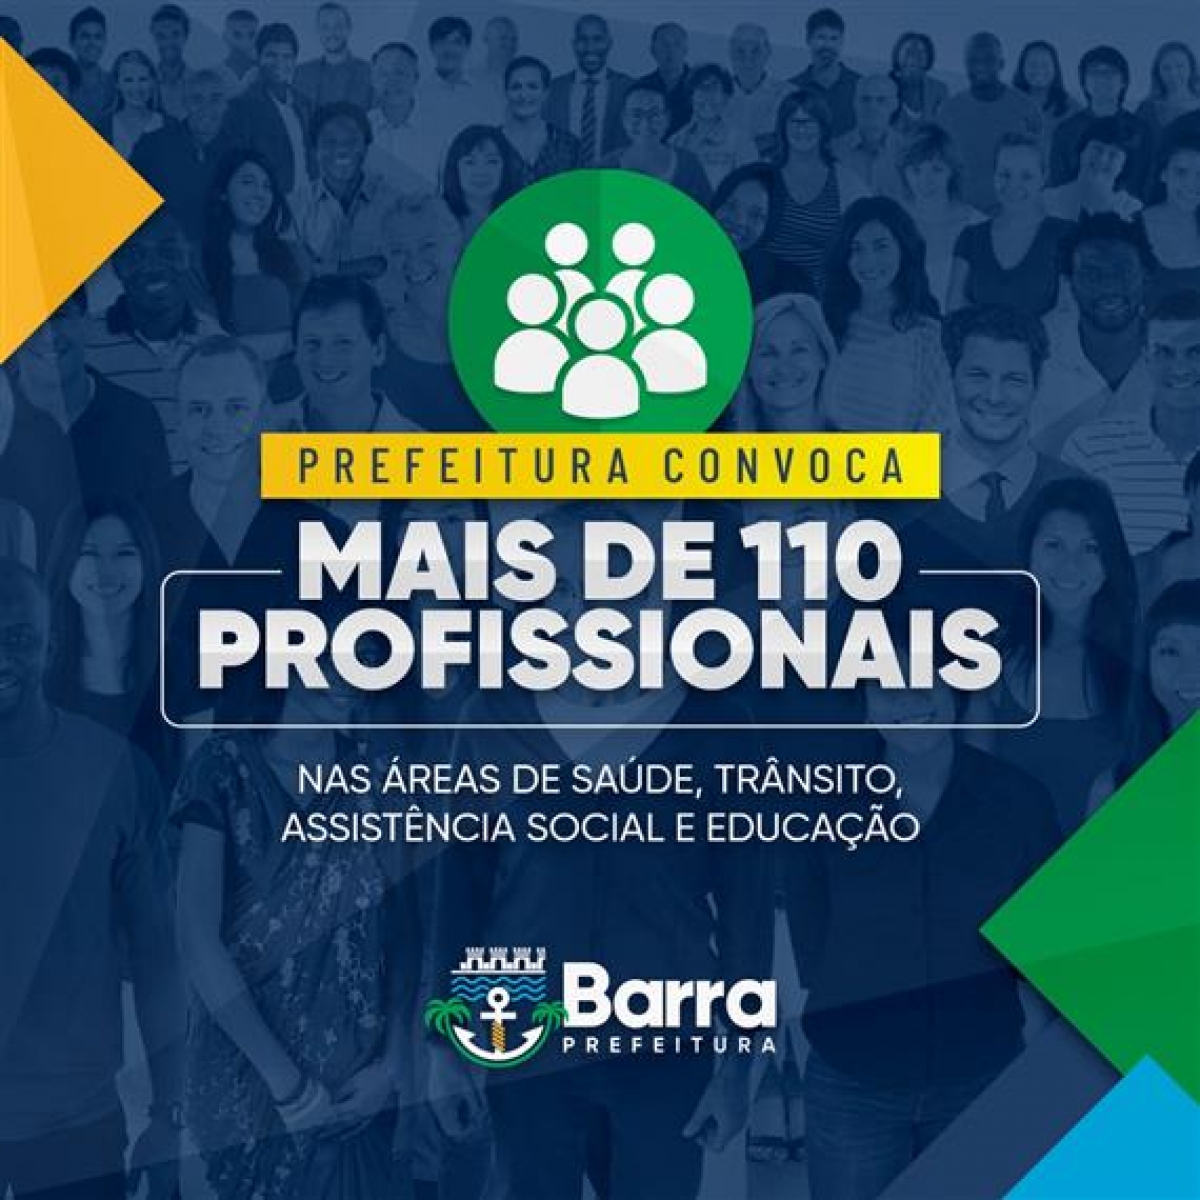 Prefeitura da Barra dos Coqueiros convoca mais de 110 profissionais aprovados em concurso público para diversas áreas - Imagem: Divulgação | Prefeitura da Barra dos Coqueiros